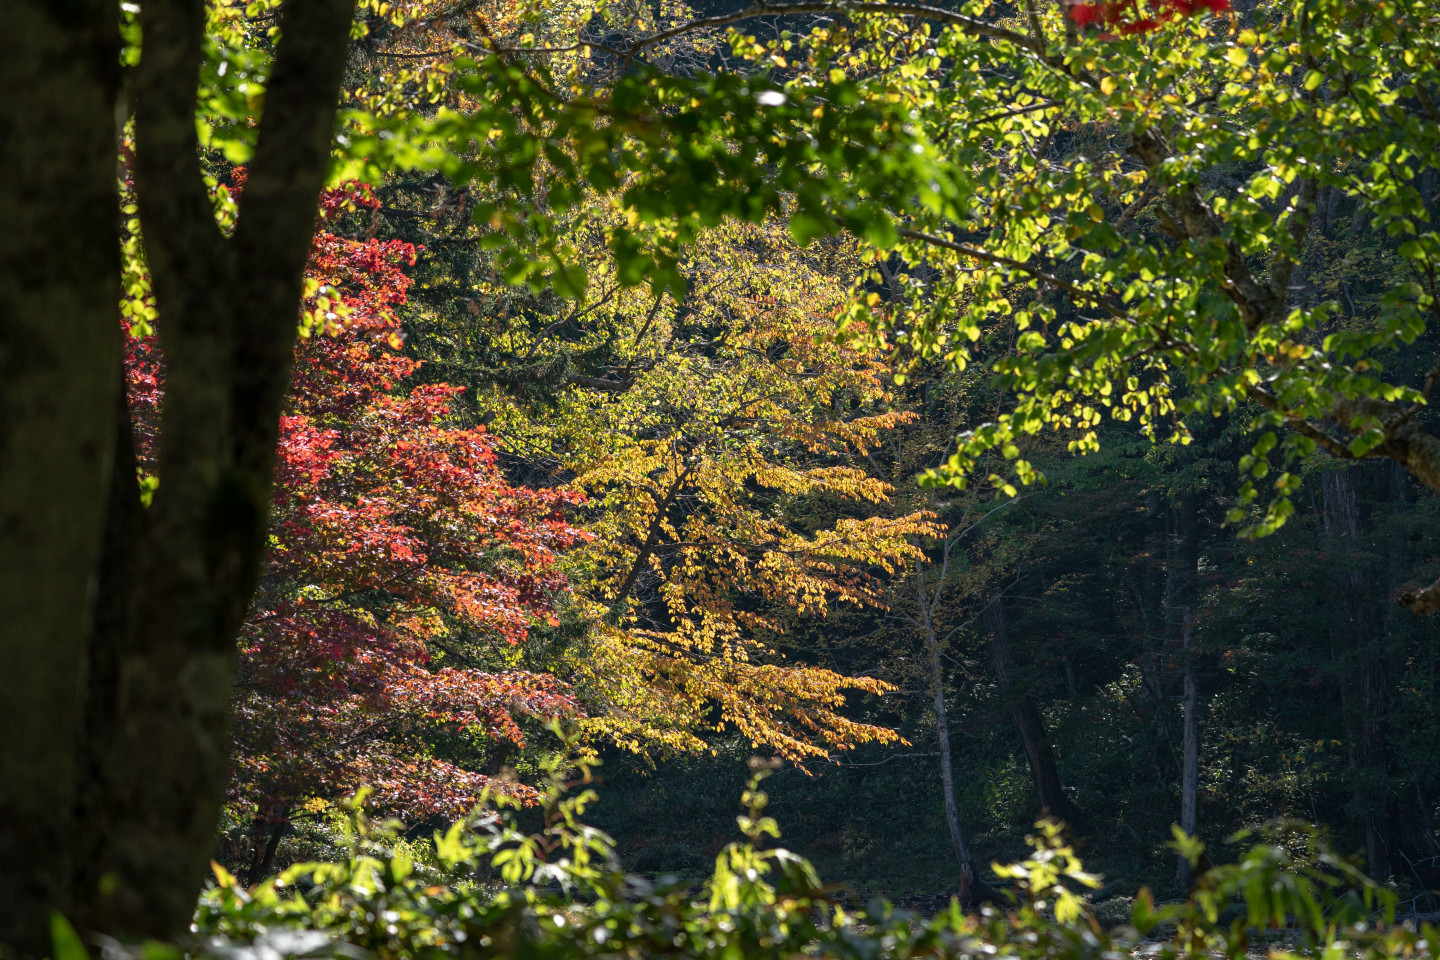 8.「光の森」を散策して、四季折々の自然の魅力を堪能する